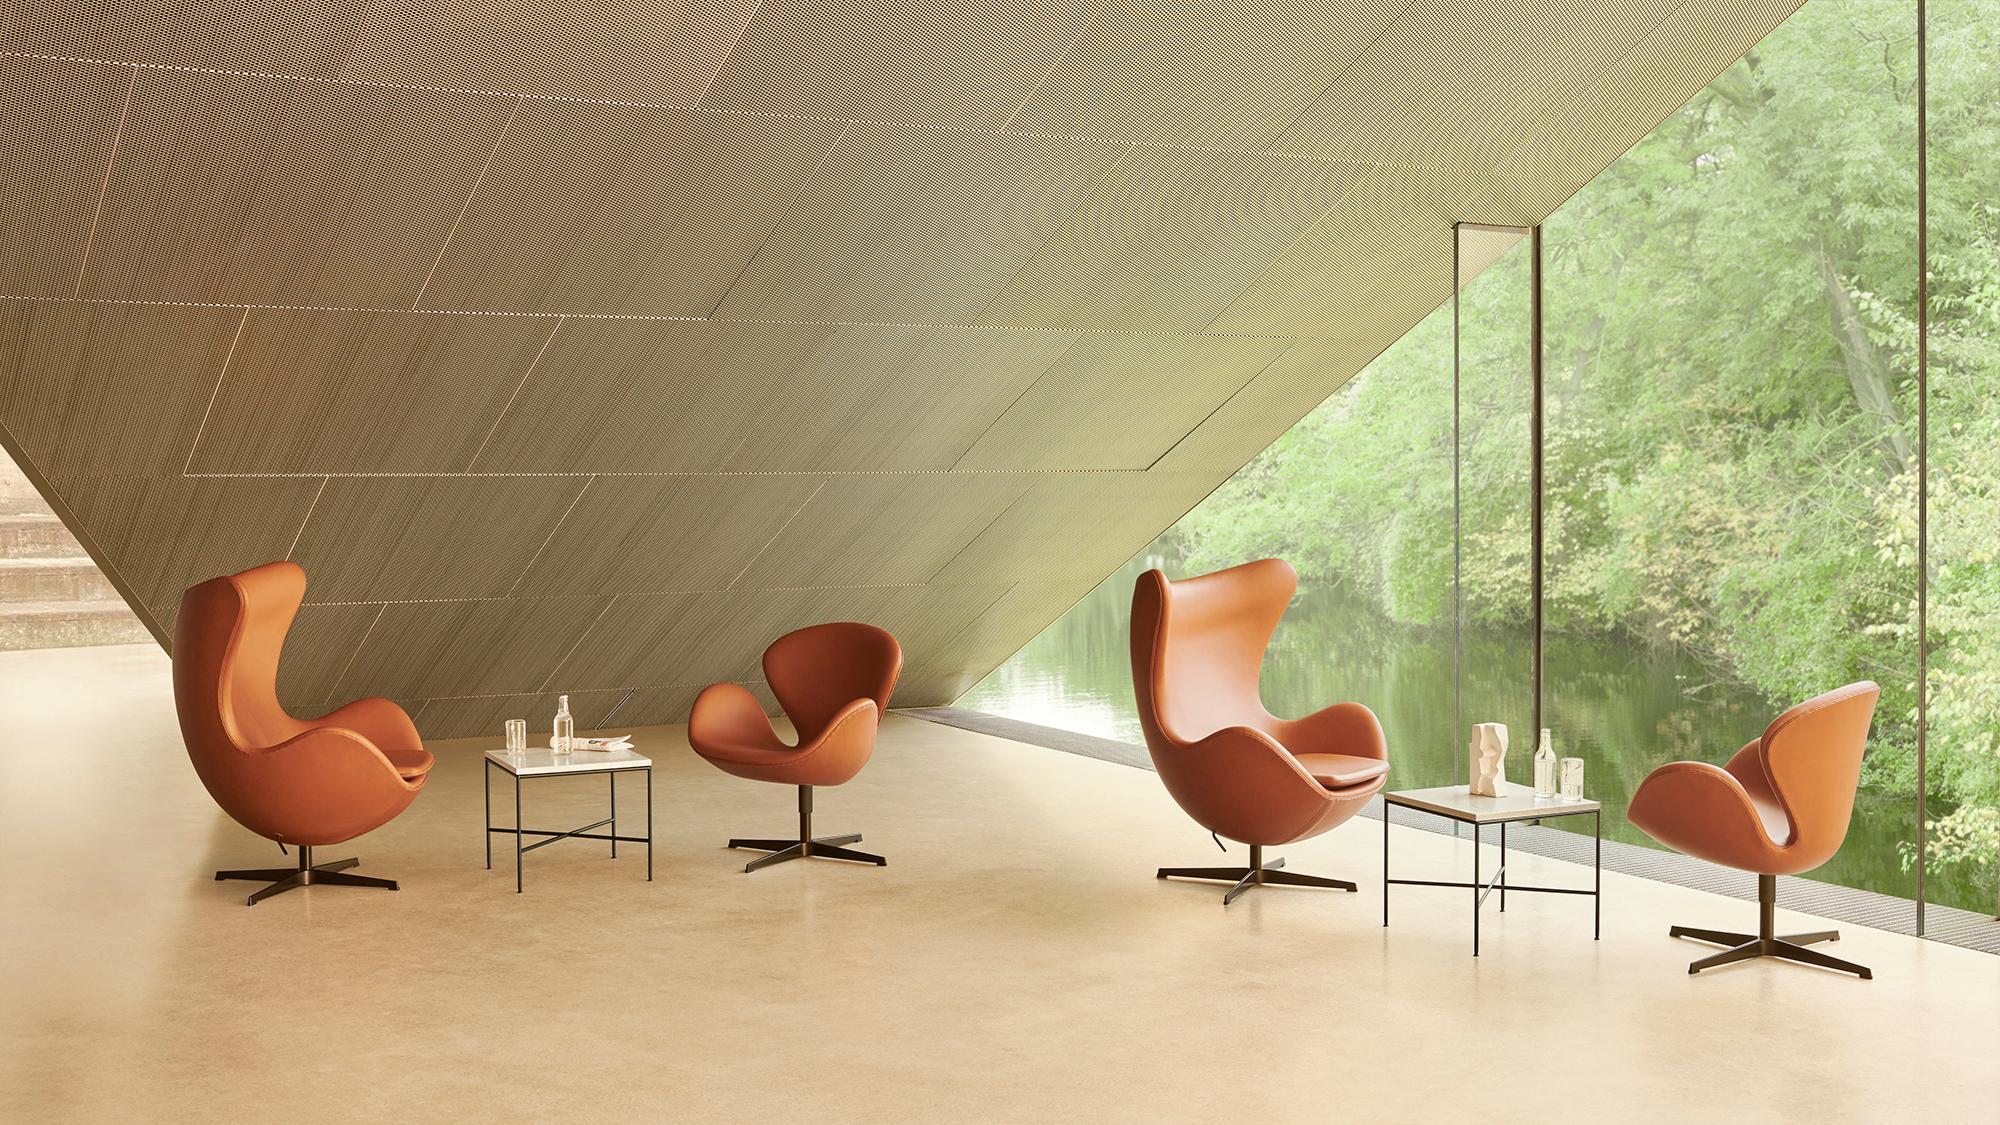 Chaise 'Swan' d'Arne Jacobsen pour Fritz Hansen en cuir (Cat. 4).

Fondée en 1872, la société Fritz Hansen est devenue synonyme de design danois légendaire. Alliant un savoir-faire intemporel à un souci de durabilité, les rééditions par la marque de